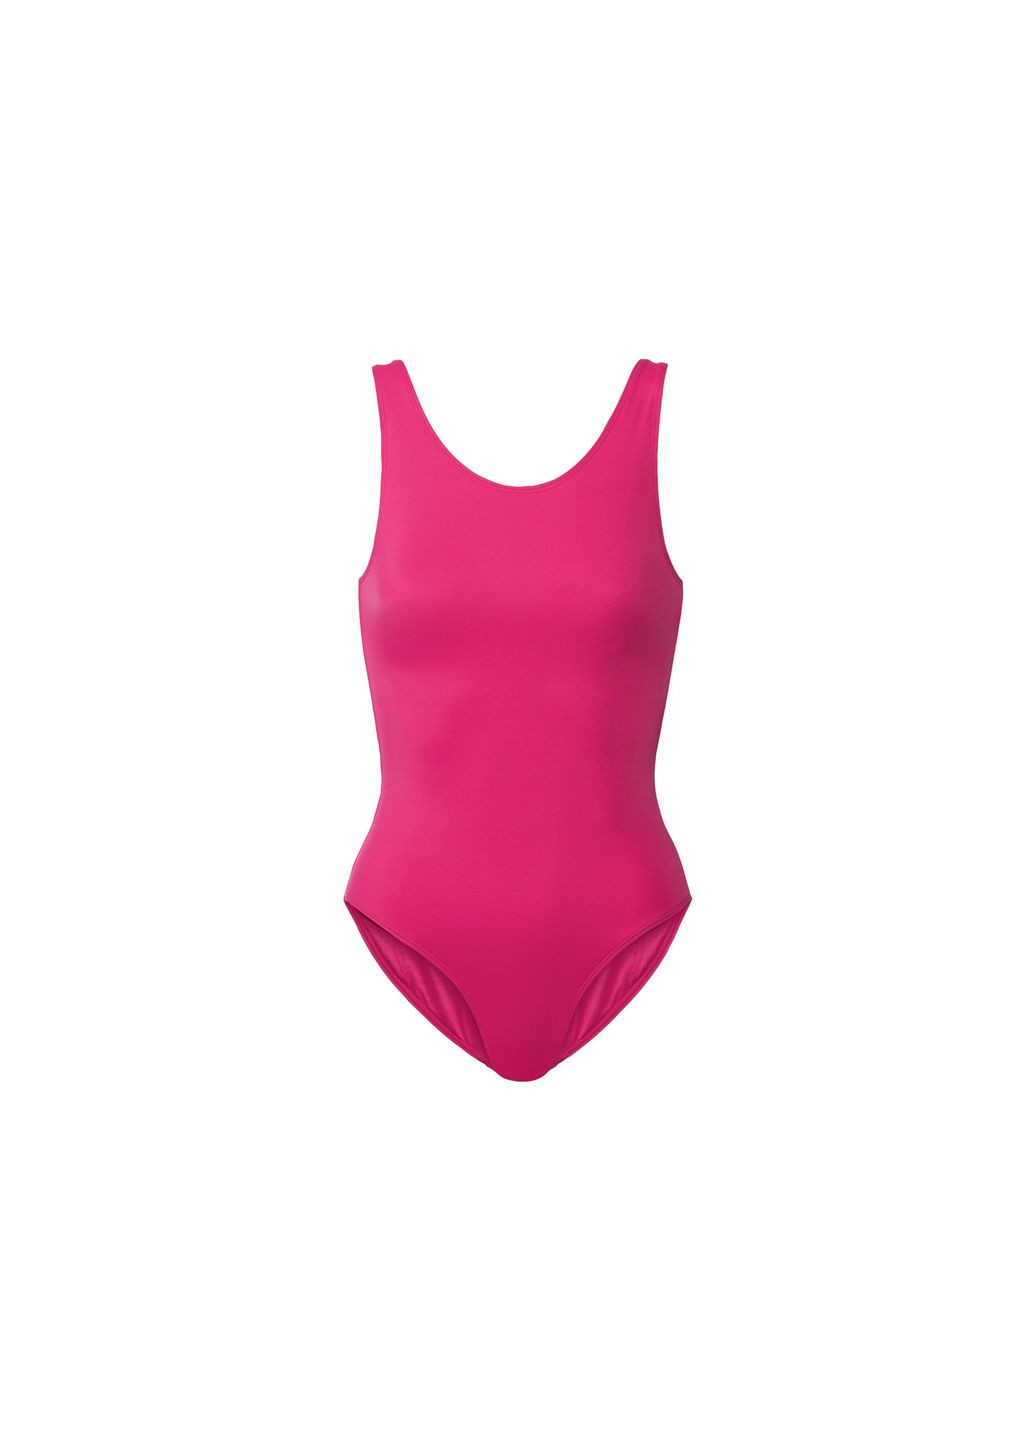 Розовый купальник слитный на подкладке для женщины creora® 371866 38(s) бикини Esmara